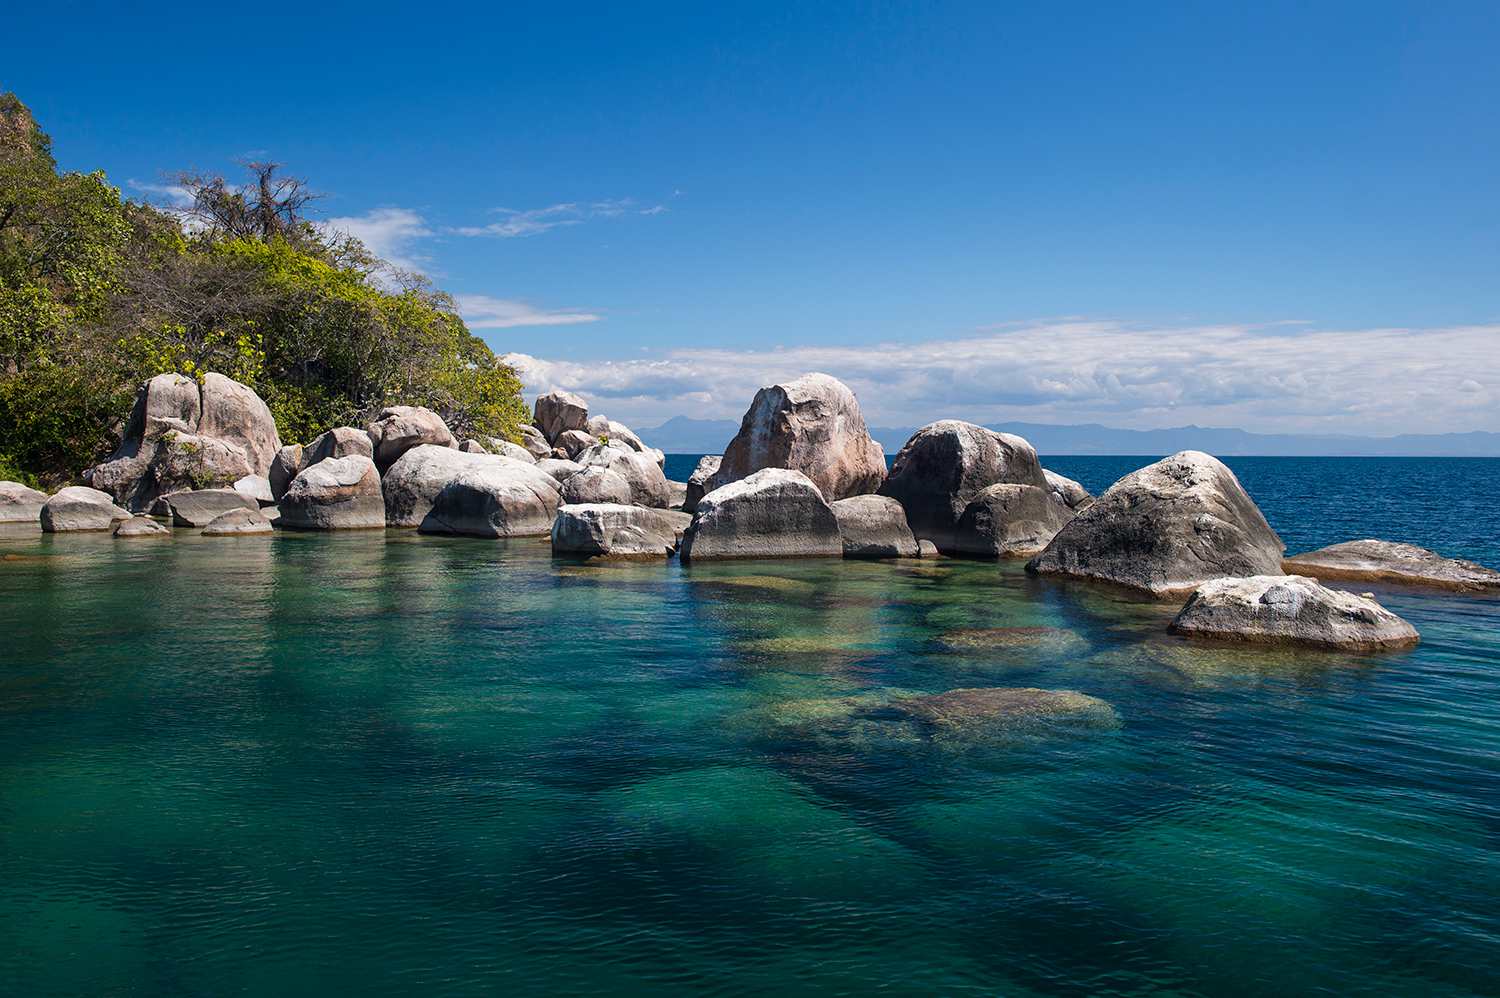 Lake Malawi, Africa